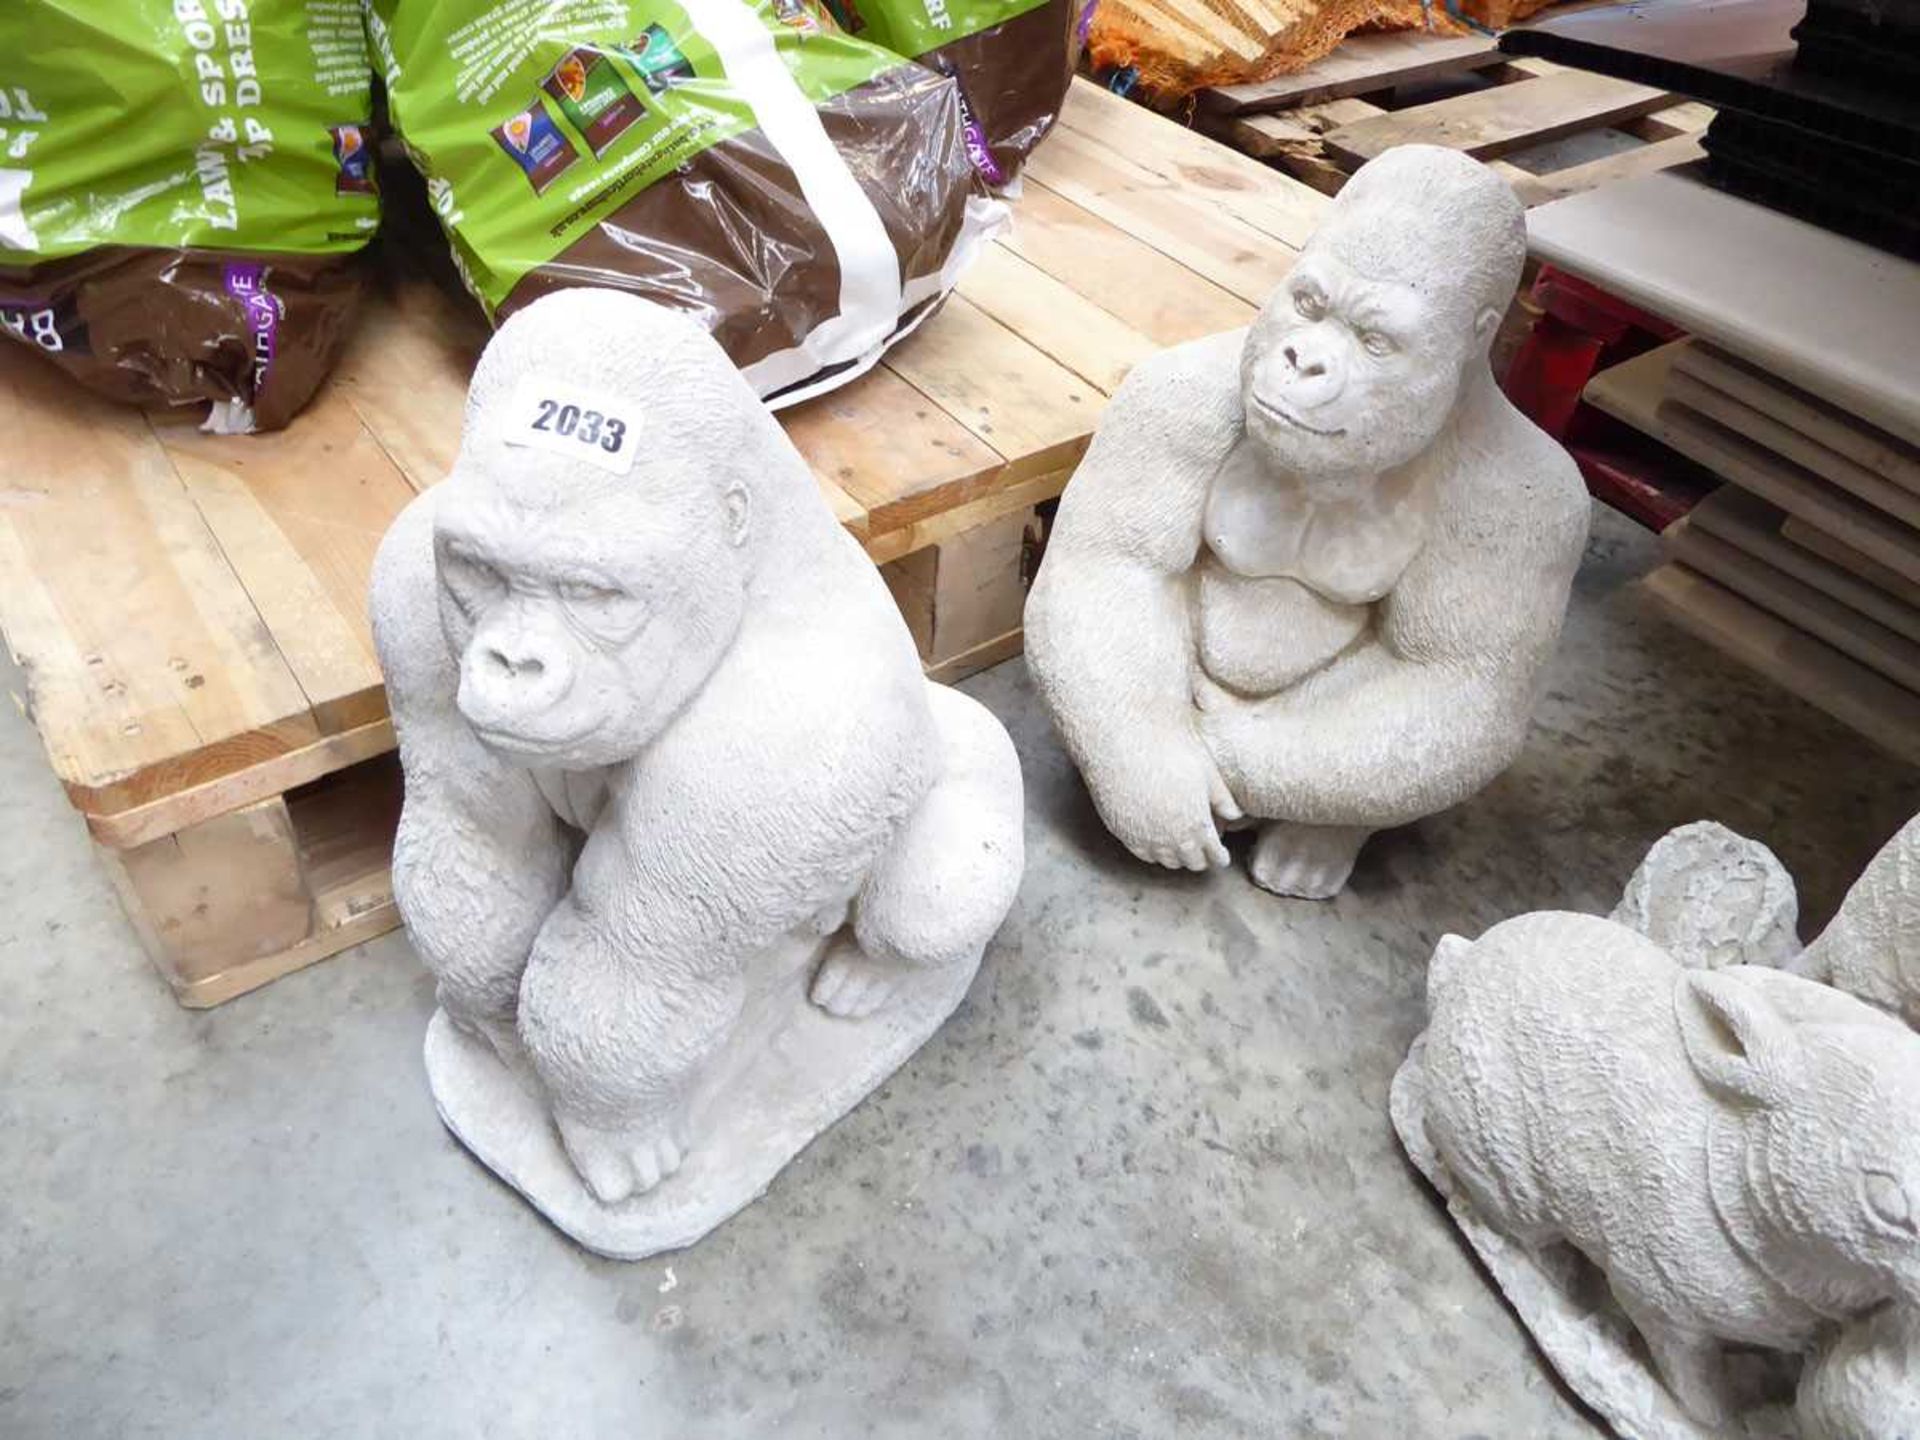 Pair of concrete gorillas